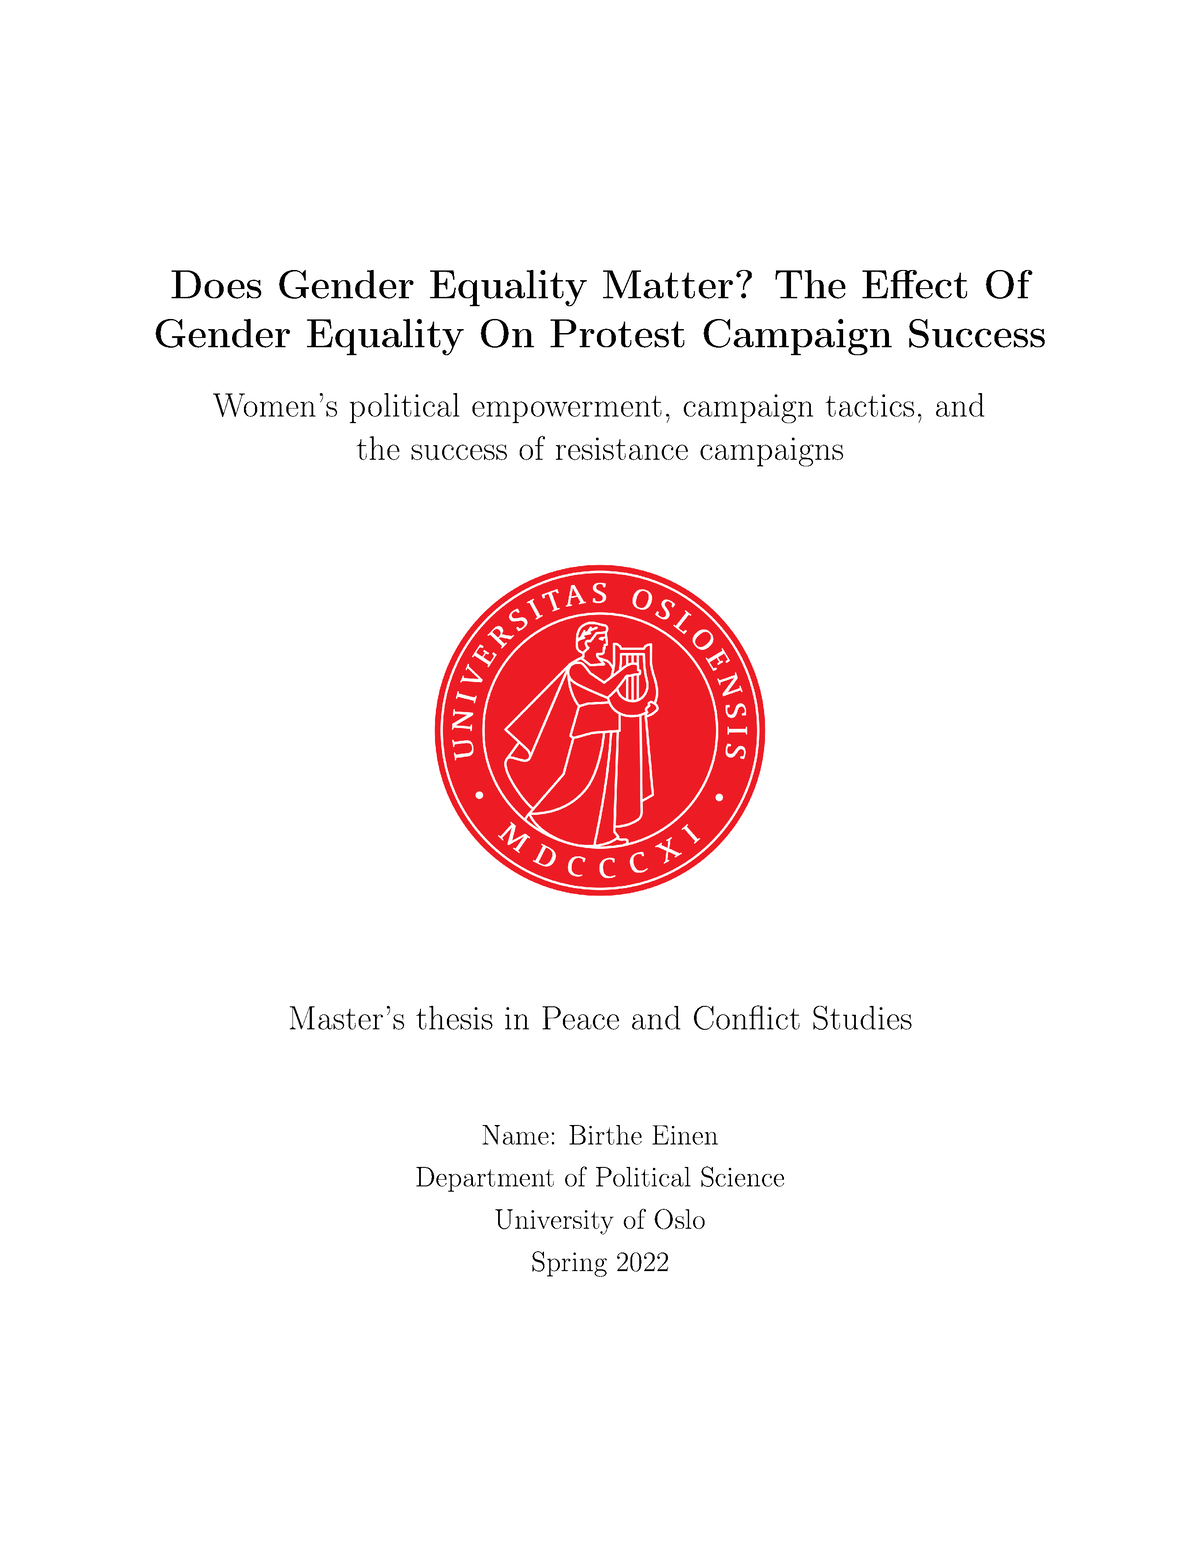 gender equality bachelor thesis